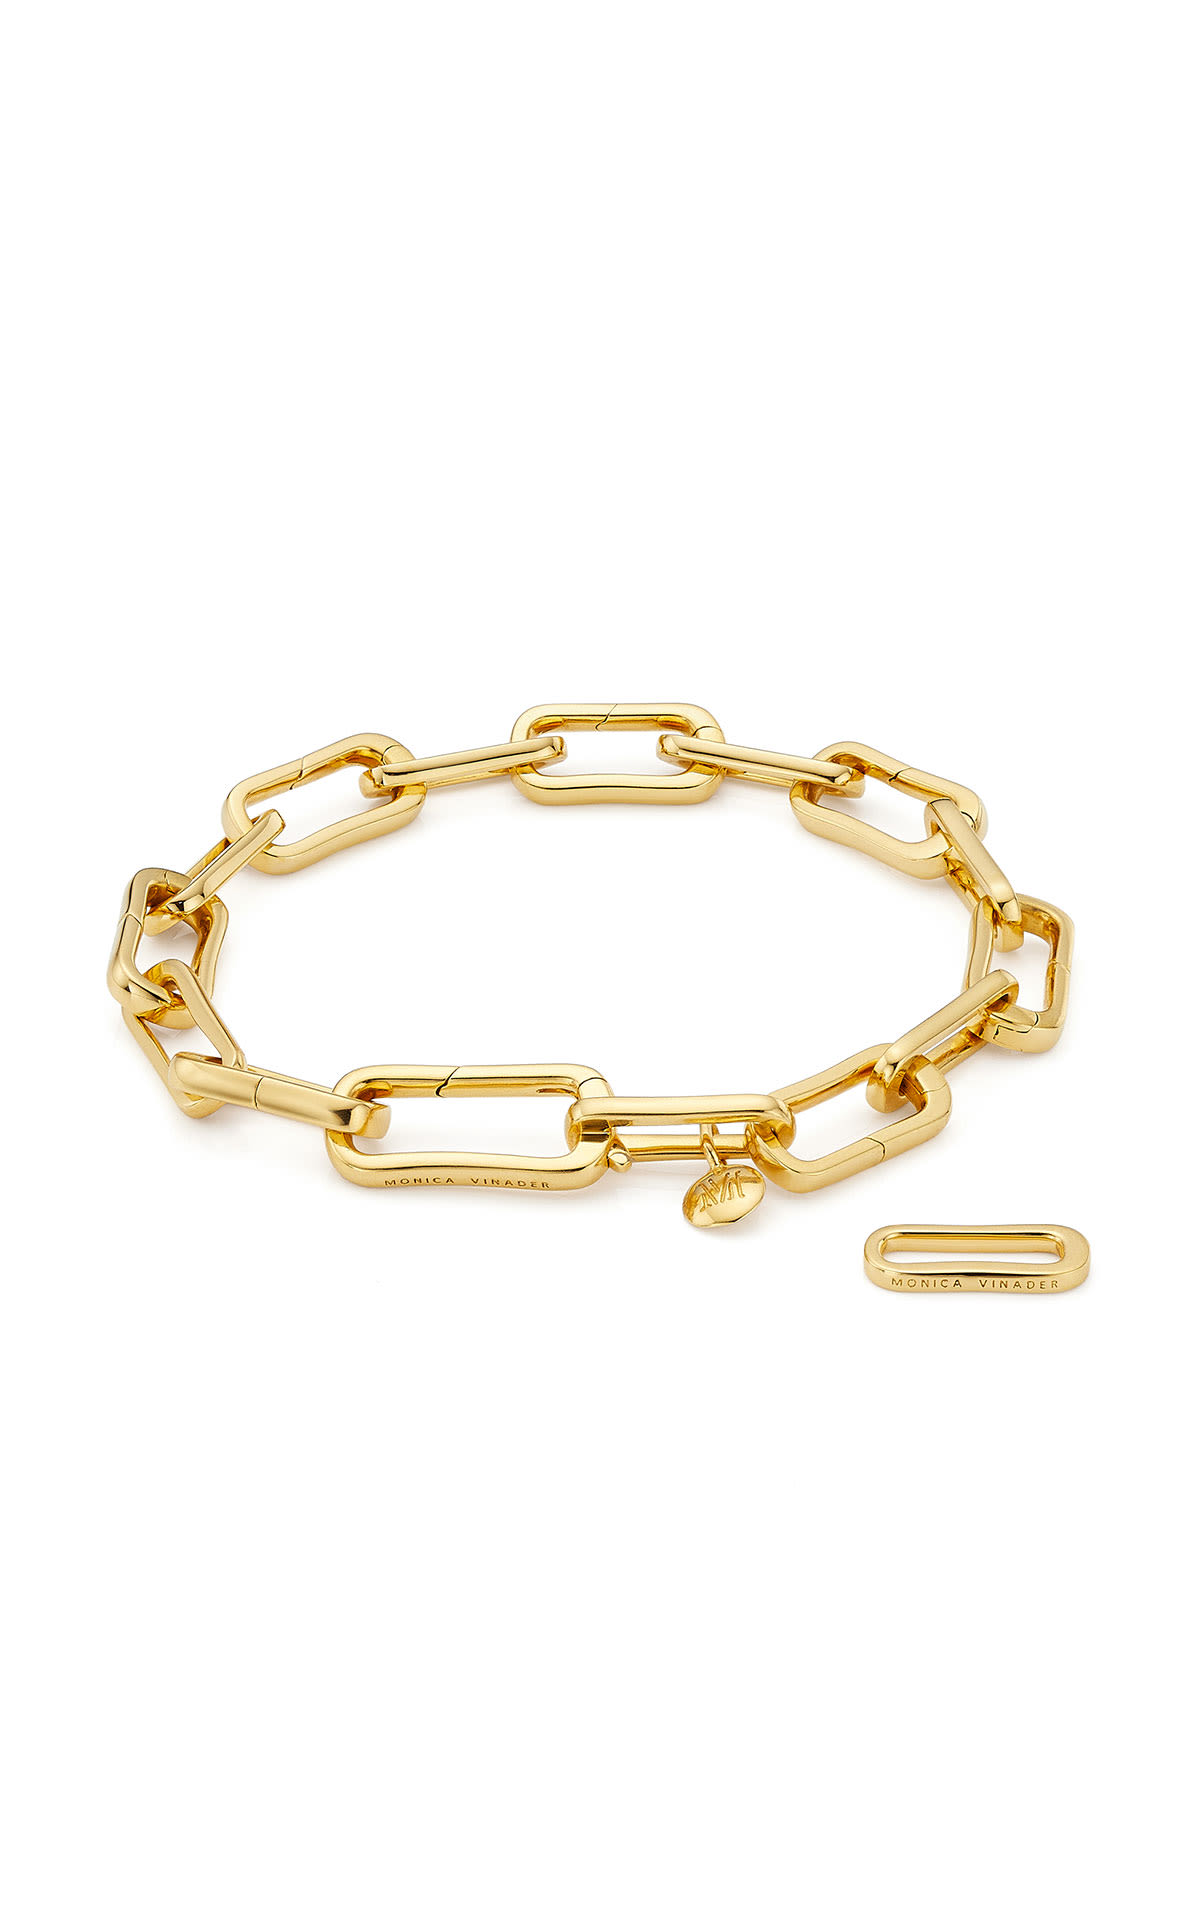 Monica Vinader Gold vermeil alta capture charm bracelet from Bicester Village